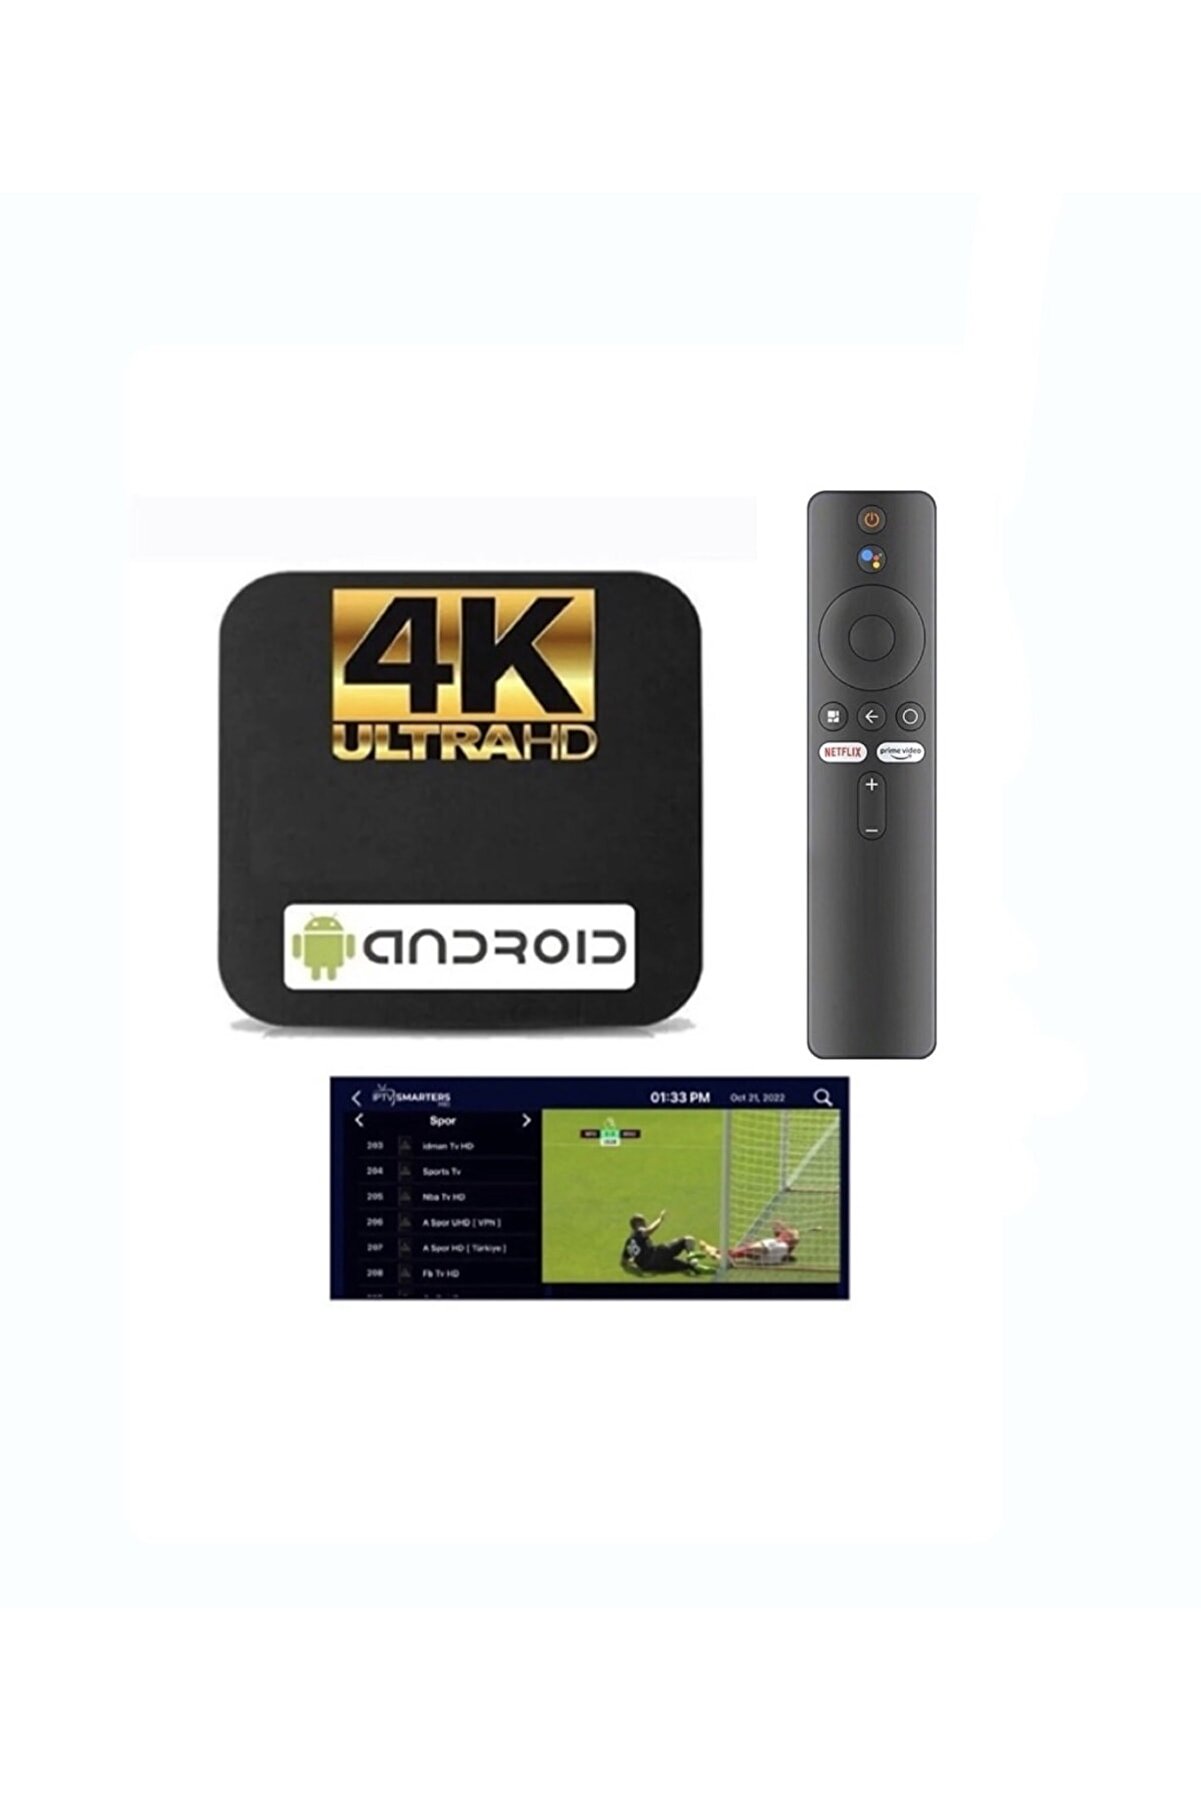 Smart 4k Android Tv Box - Ip.tv / Full Paket Yayın - Akıllı Tv Kutusu - Internet Tv / Medıa Player